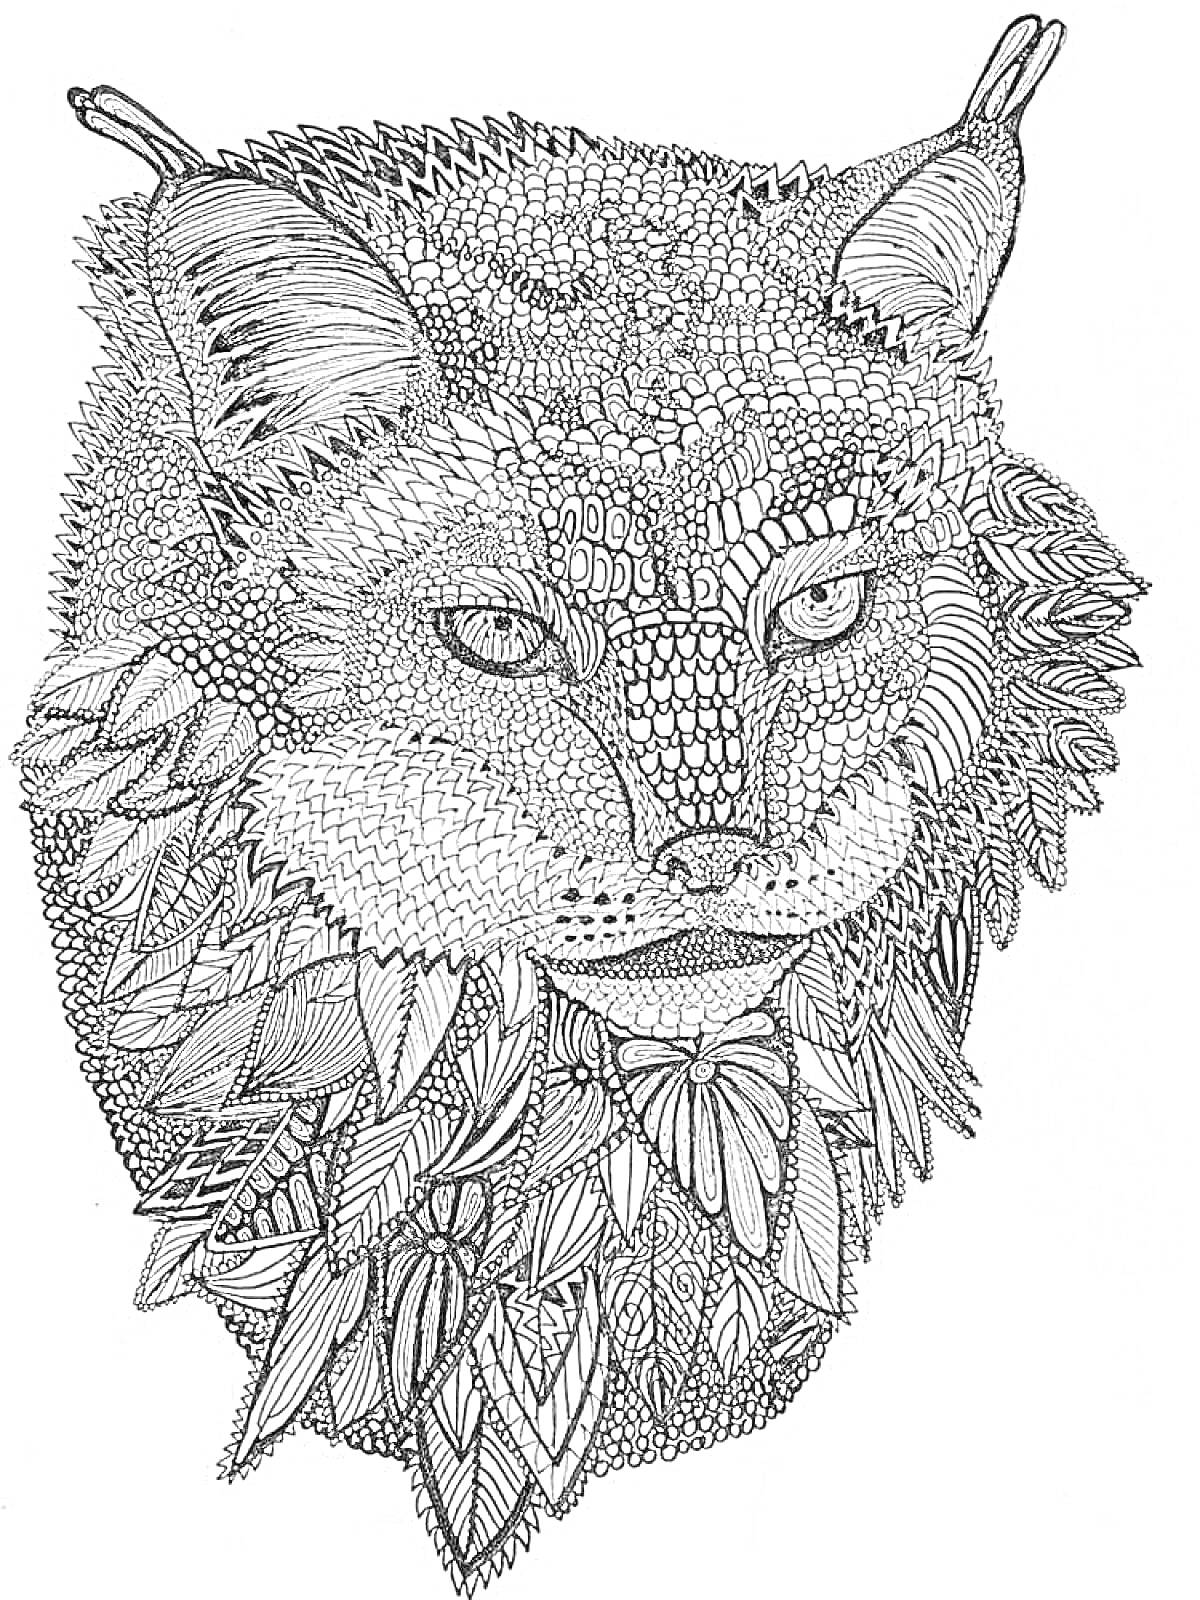 Рисунок сложного животного с элементами узоров и текстур